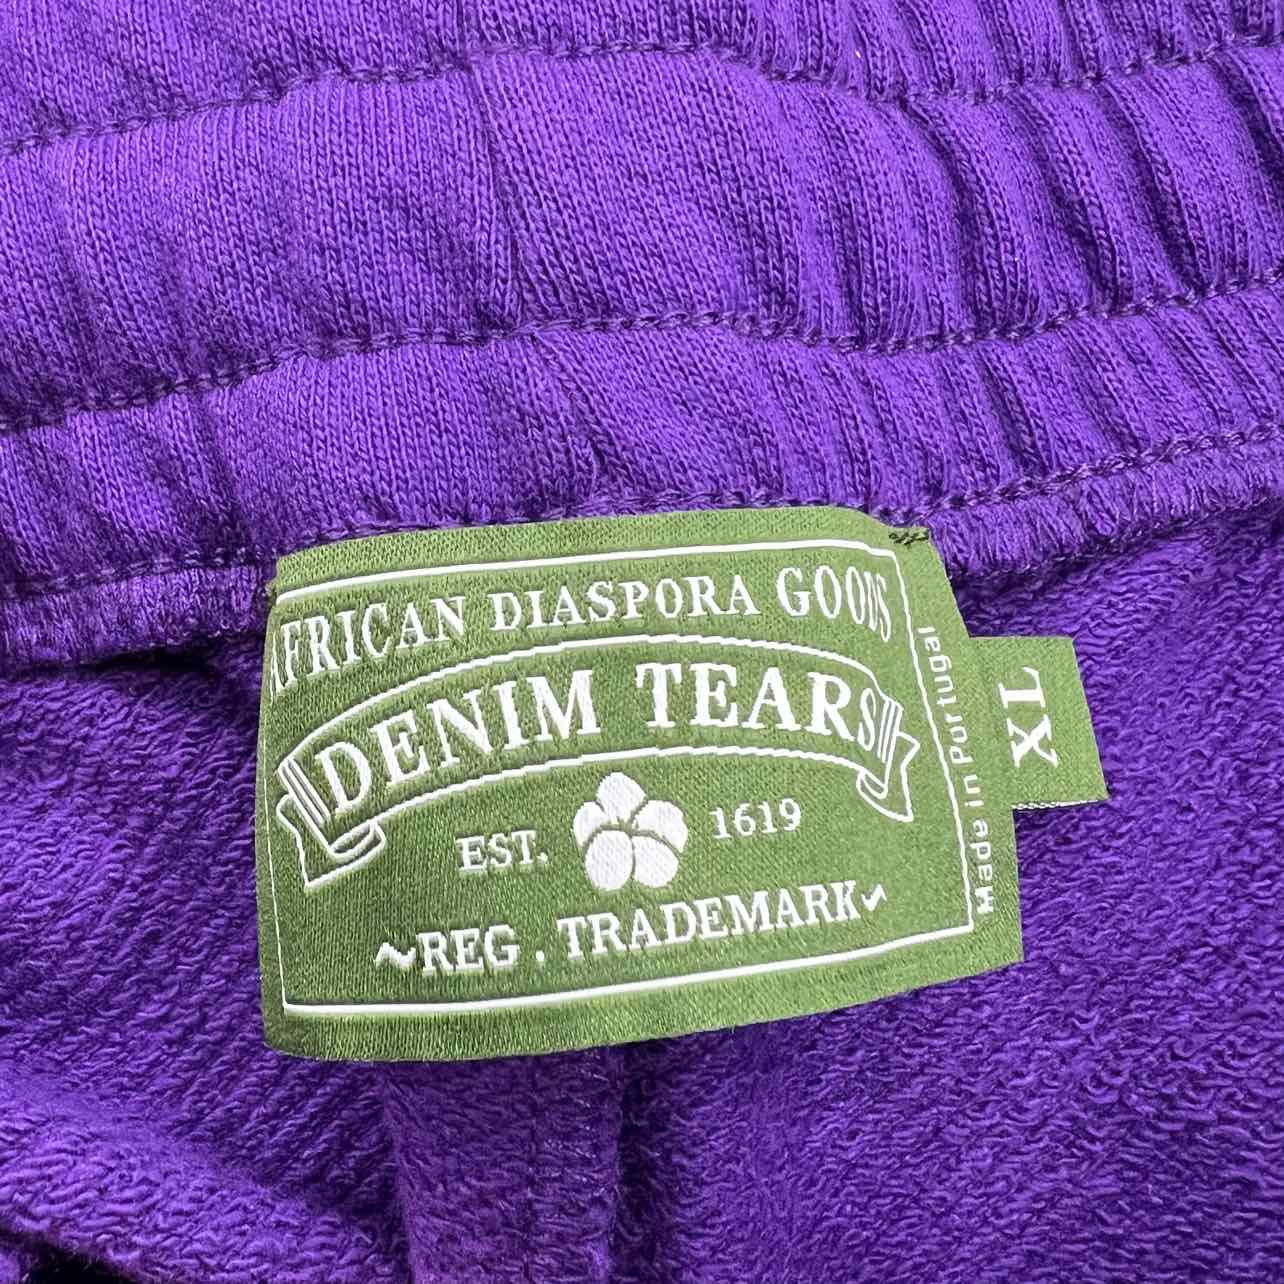 Denim Tears Shorts &quot;COTTON WREATH&quot; Purple New Size XL